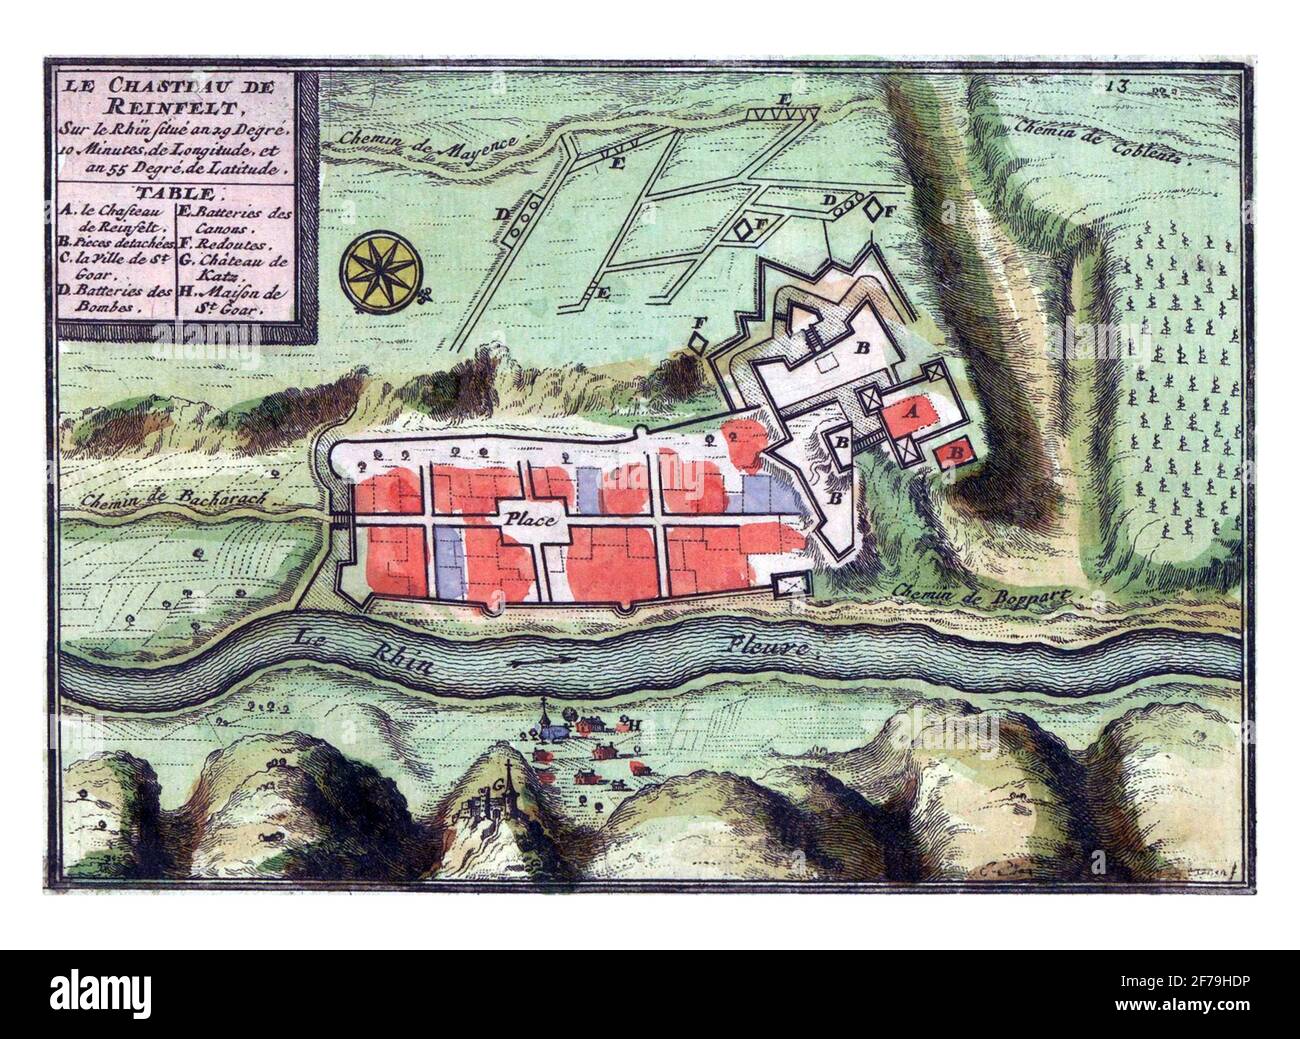 Map of Rheinfels, vintage engraving. Stock Photo